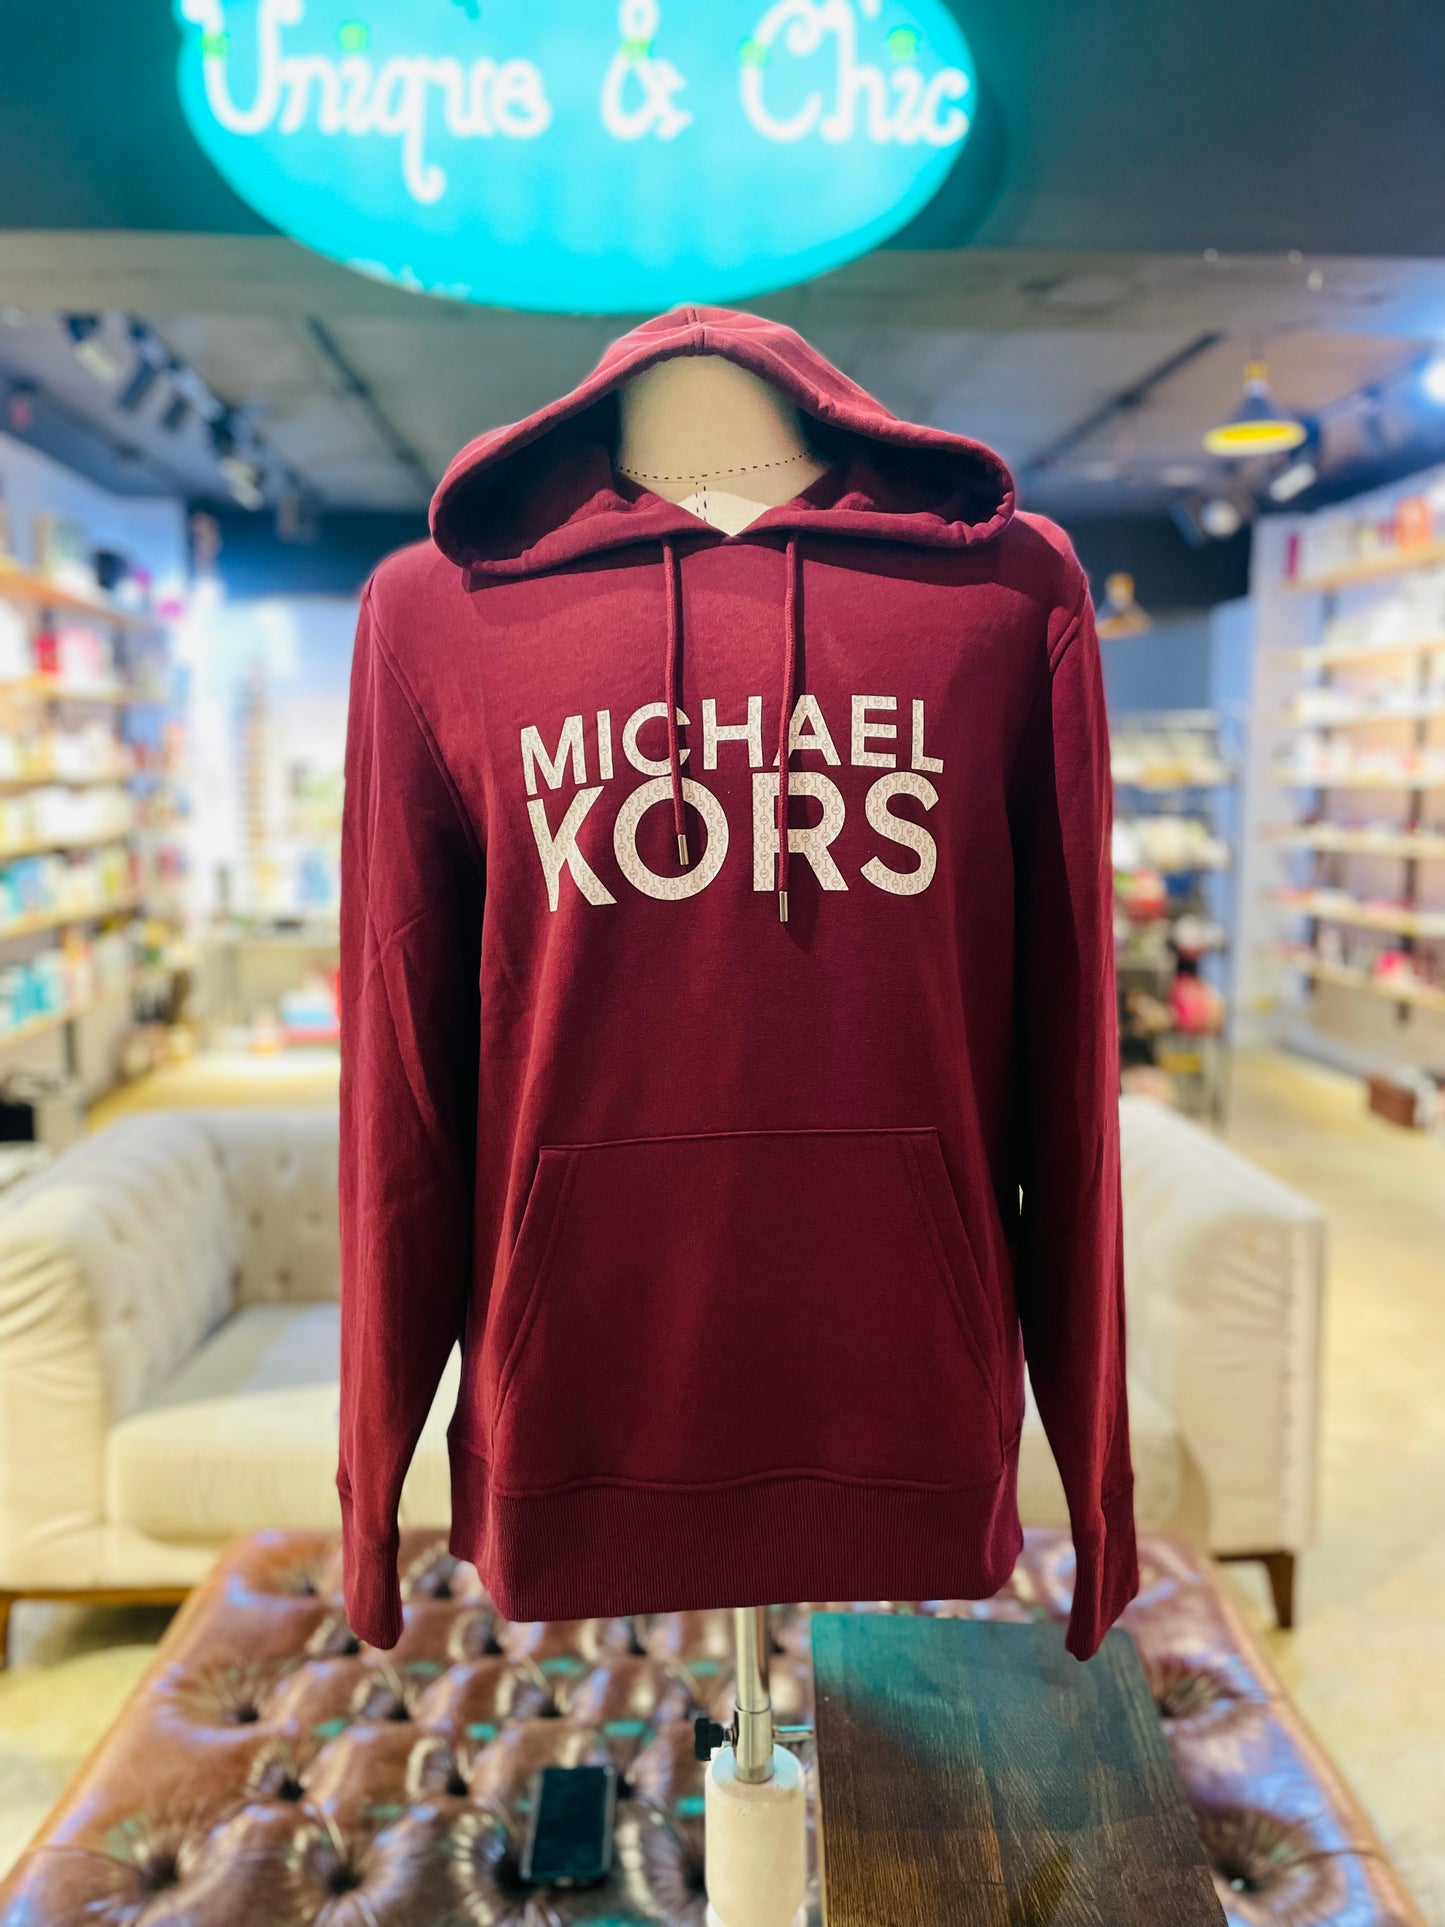 Michael kors hoodie